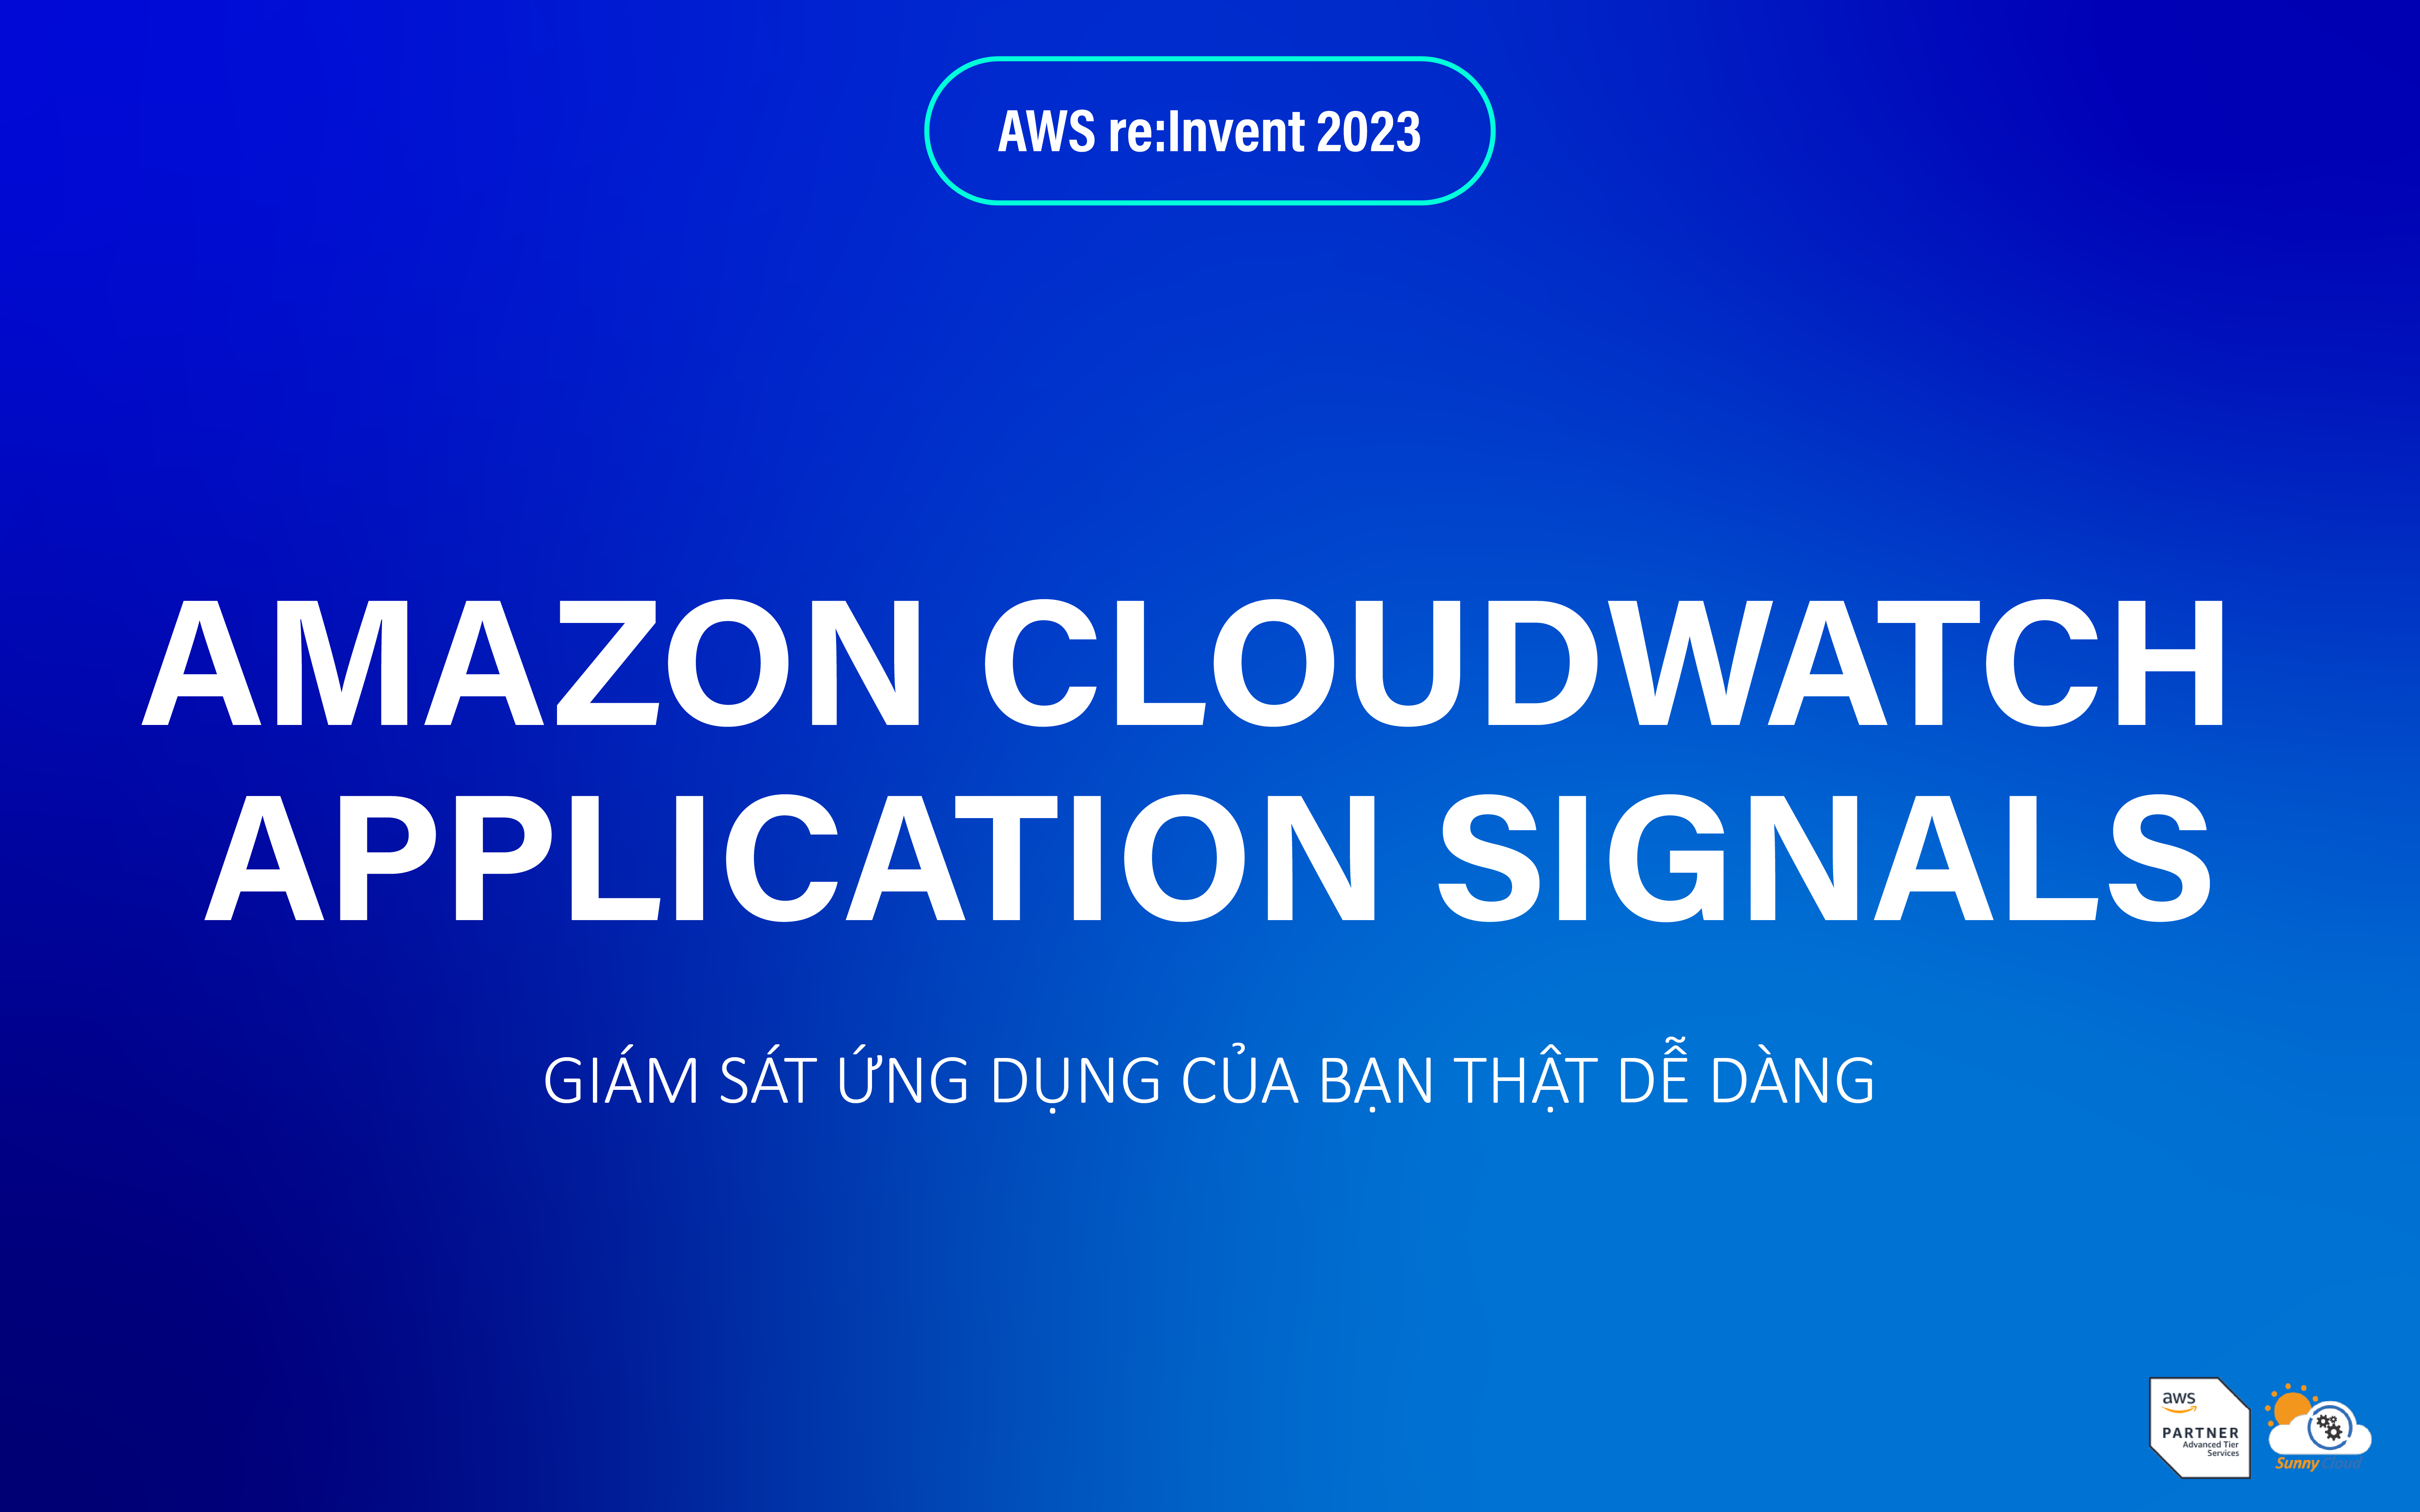 Amazon CloudWatch Application Signals – Giám sát toàn diện ứng dụng của bạn